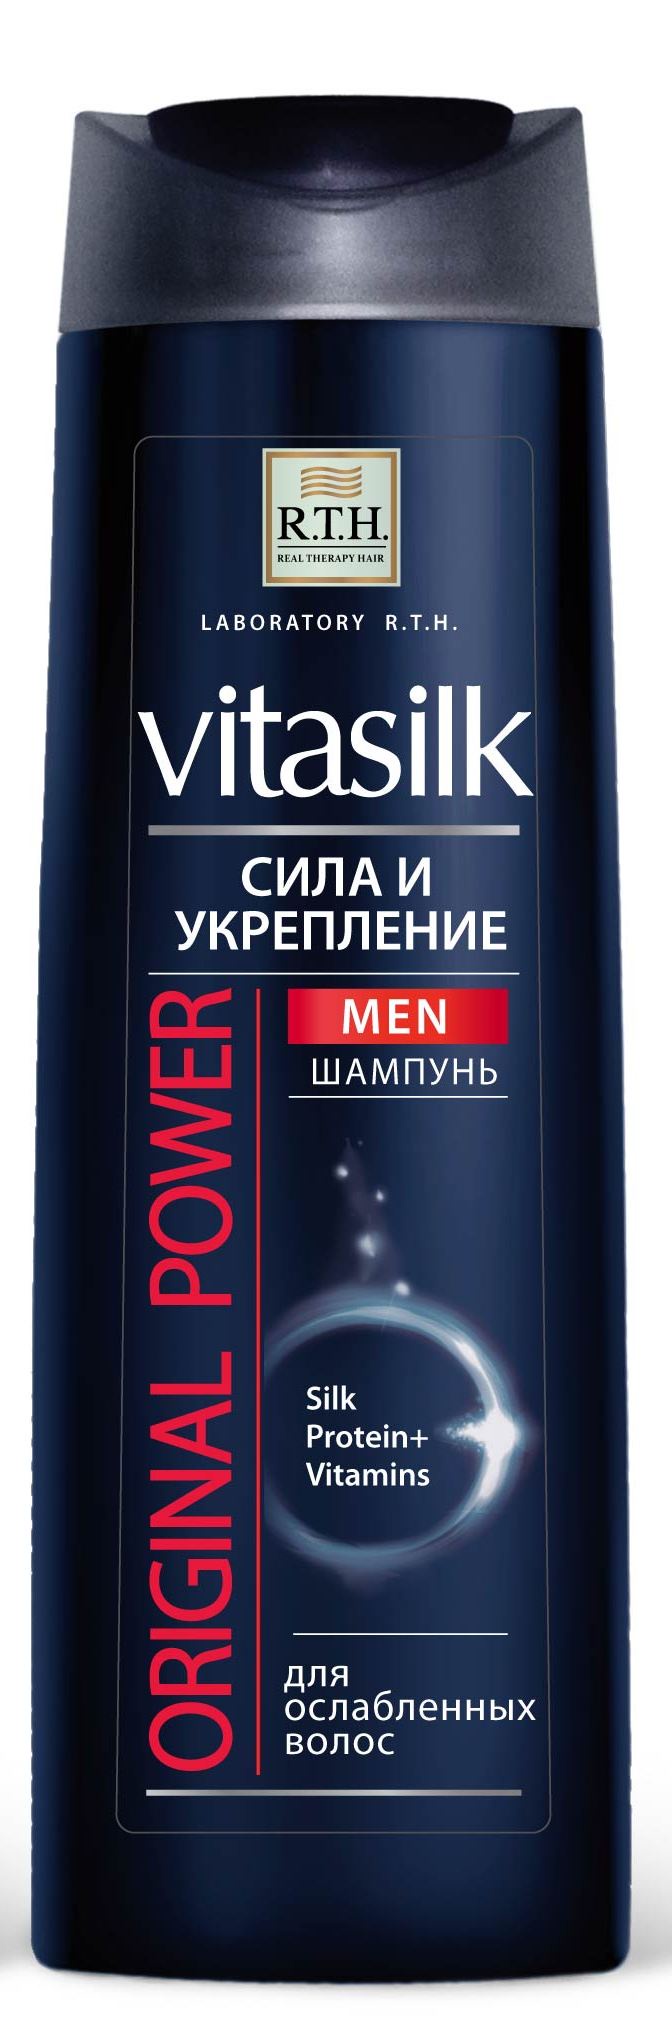 Шампунь для волос R.T.H. Vitasilk MEN Original Power